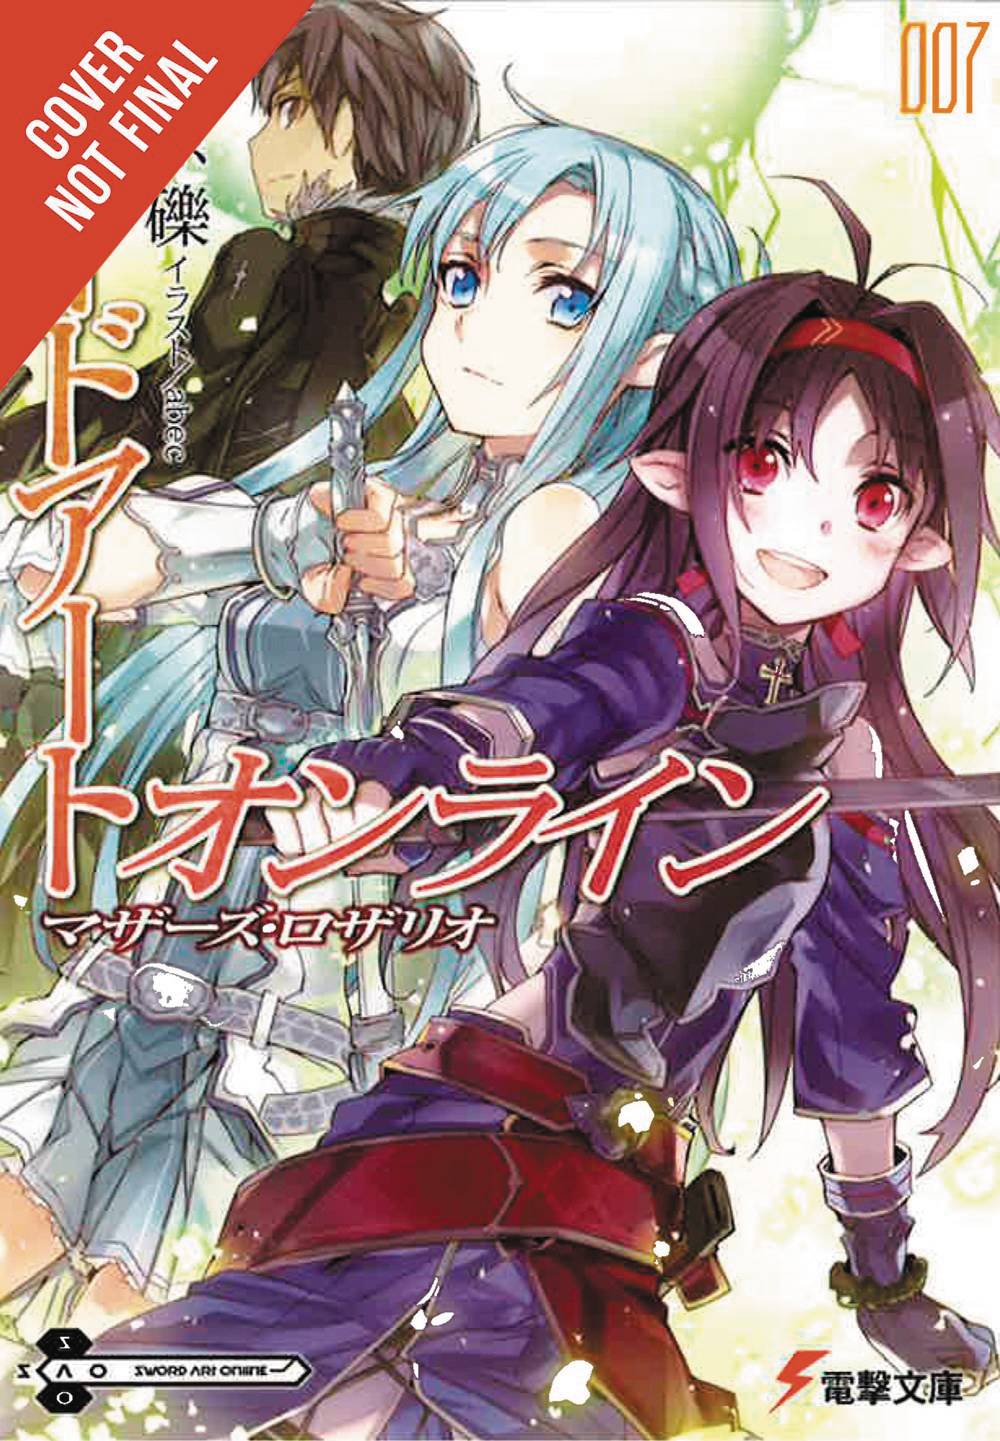 Sword Art Online Phantom Bullet Manga Volume 2